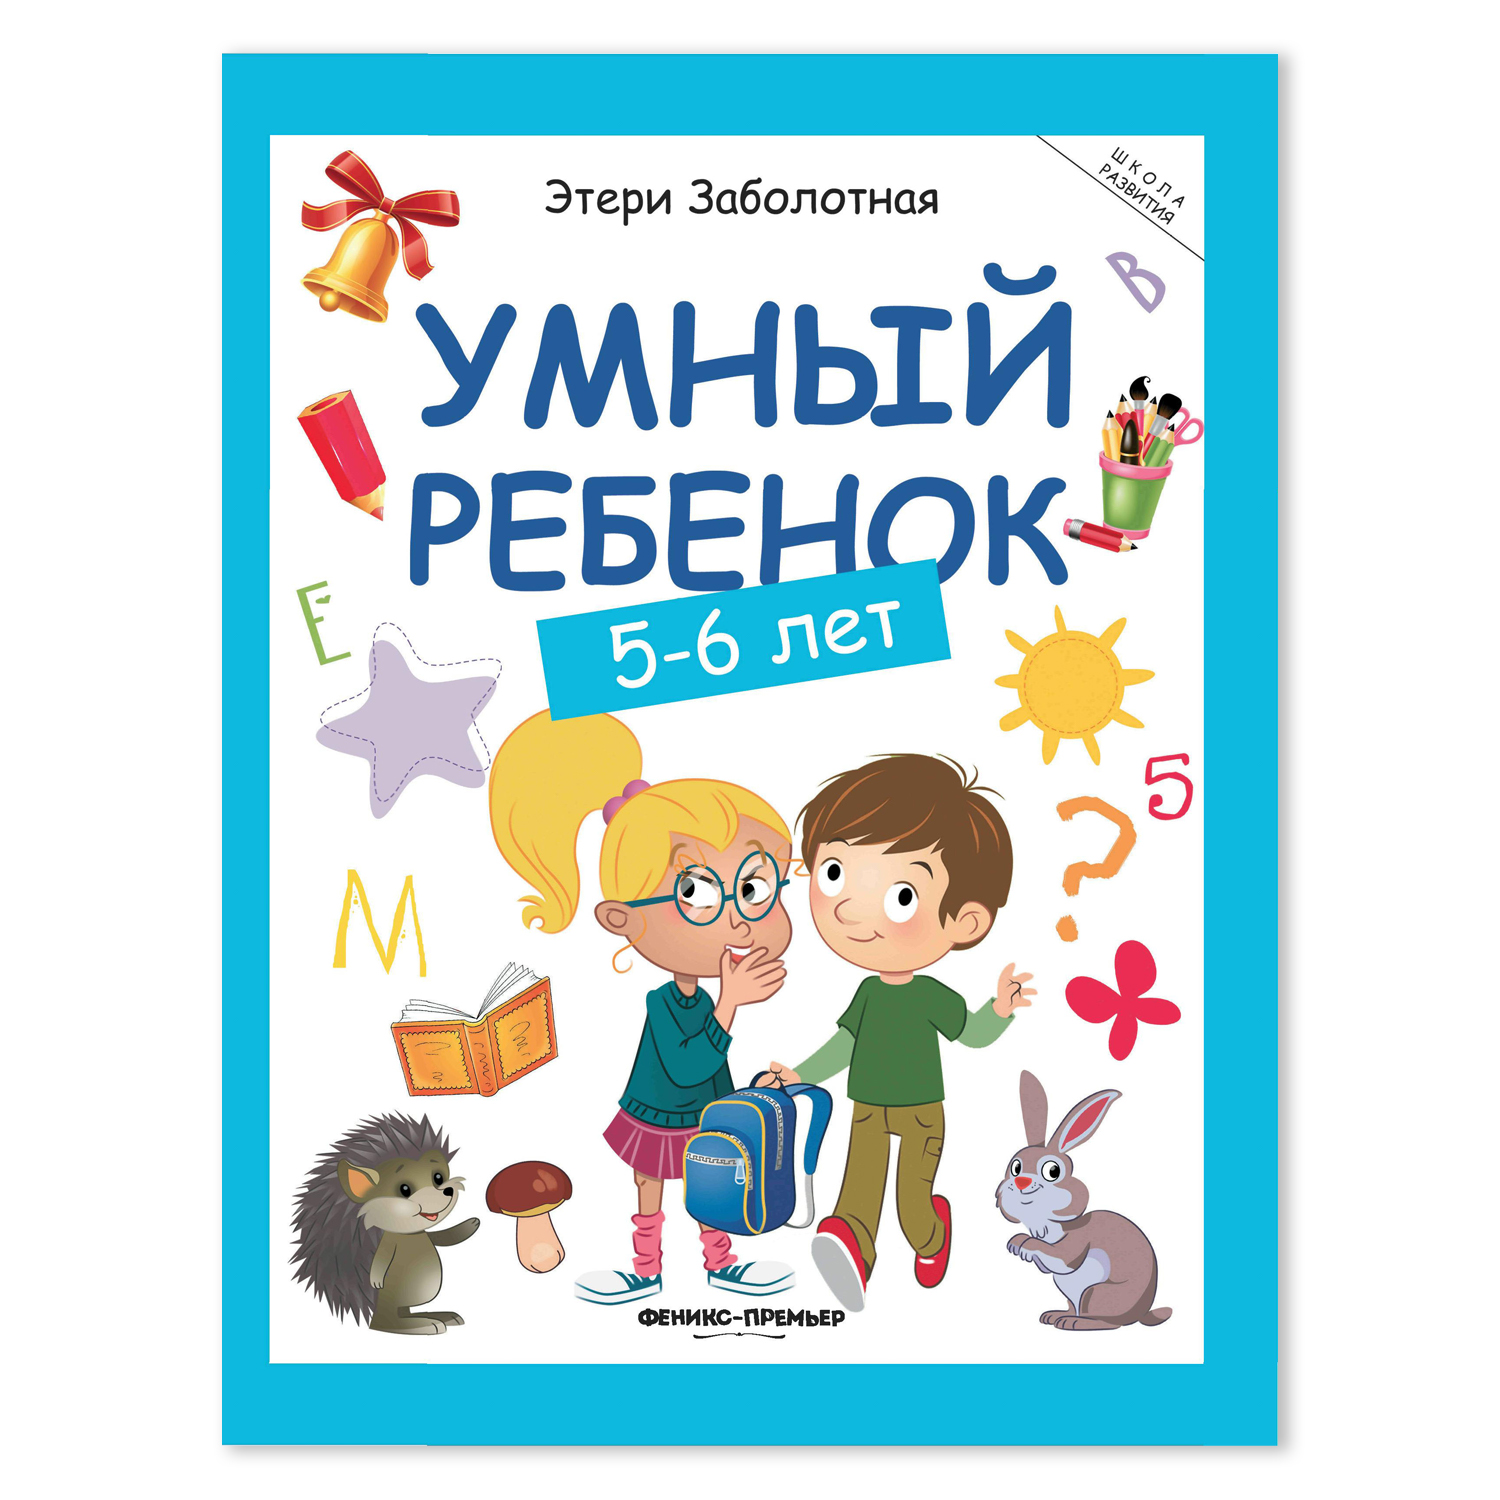 Книга Феникс Премьер Умный ребенок 5-6 лет. Развитие ребенка - фото 2